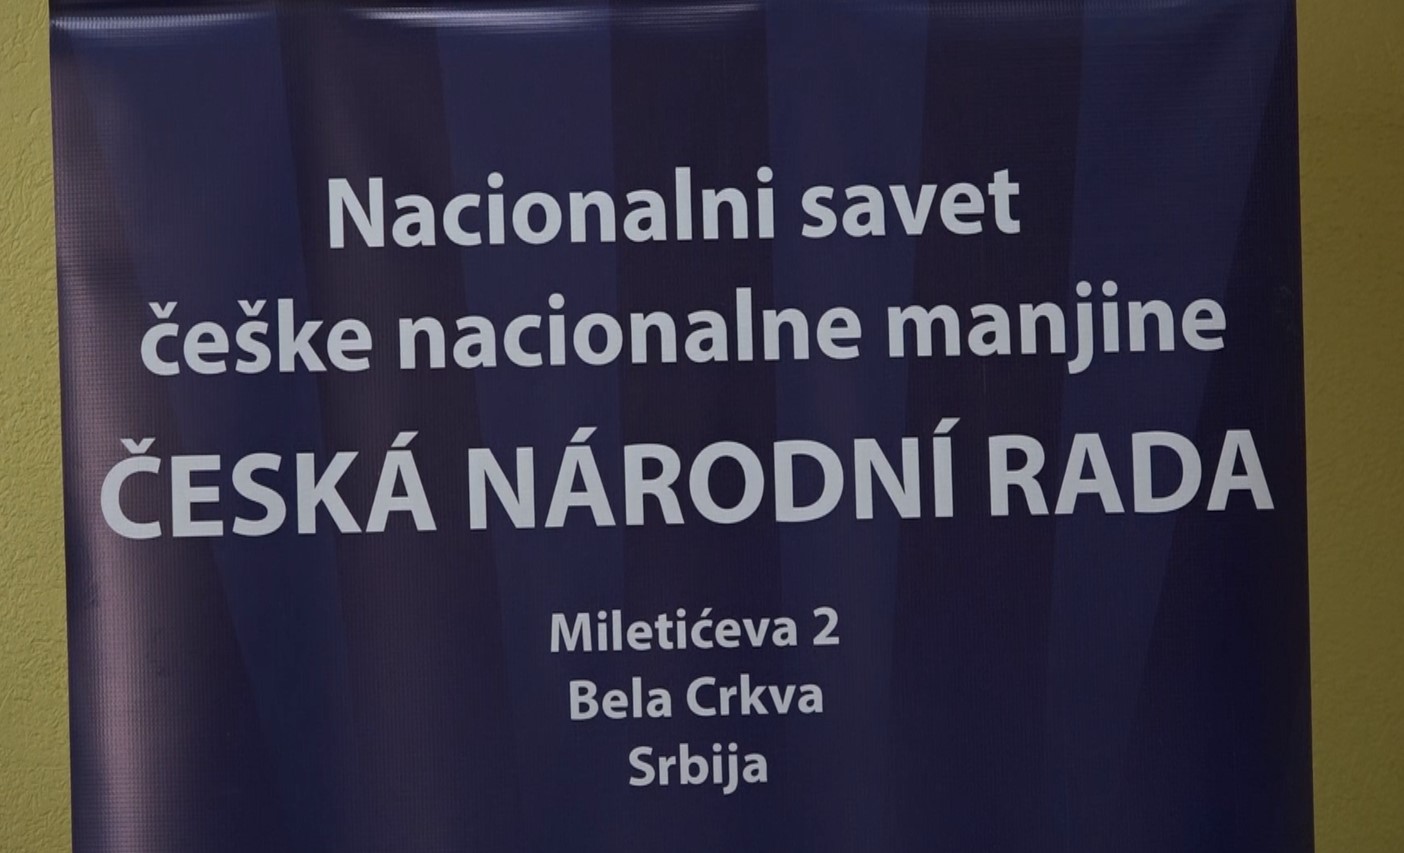 Obeležen dan Nacionalnog saveta češke nacionalne manjine u Češkom Selu